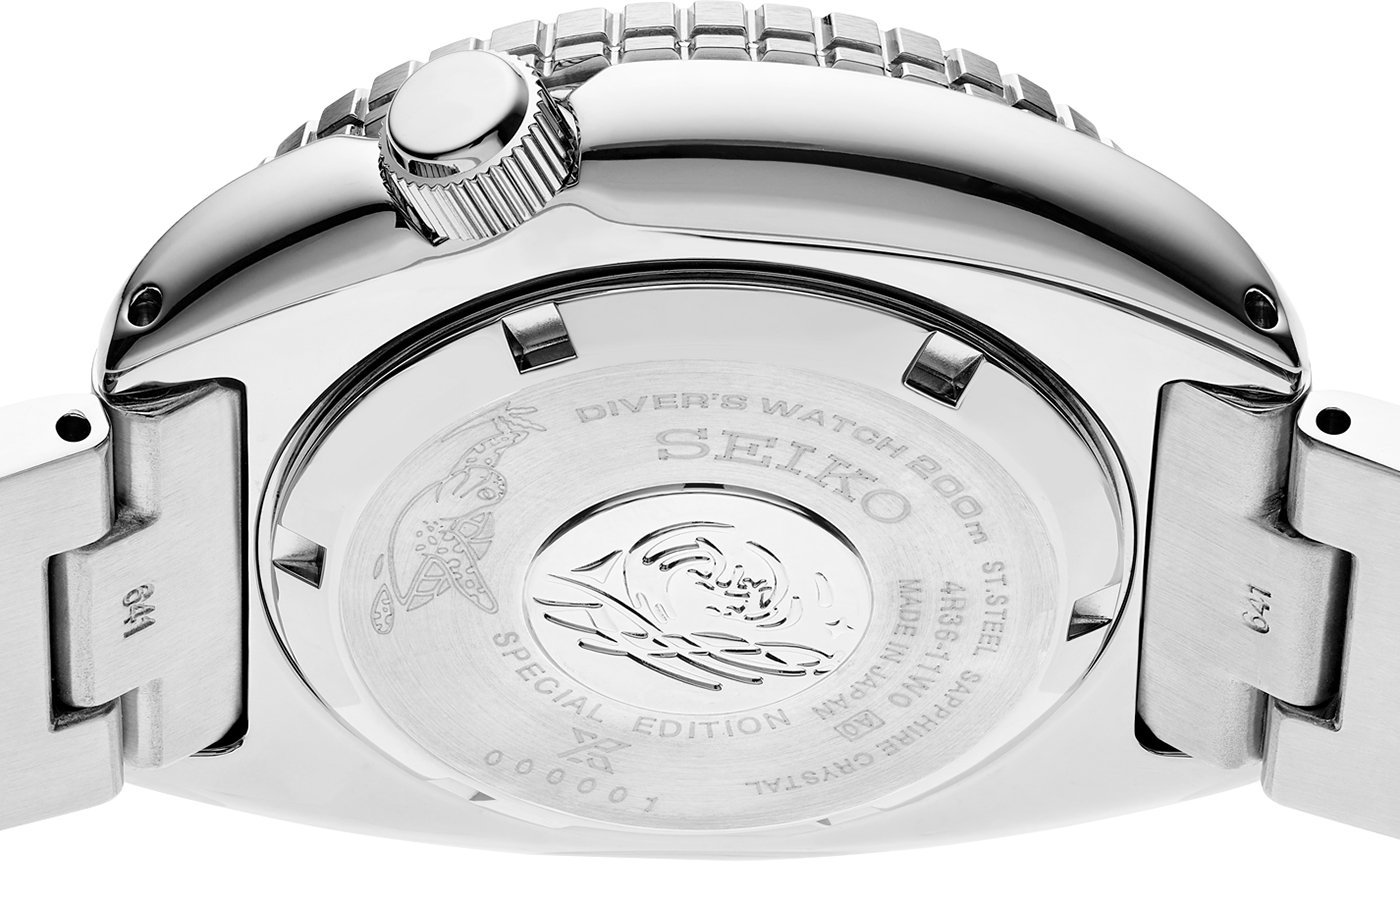 Seiko представила трио специальных серийных дайверских часов Prospex U.S., вдохновленных морскими черепахами